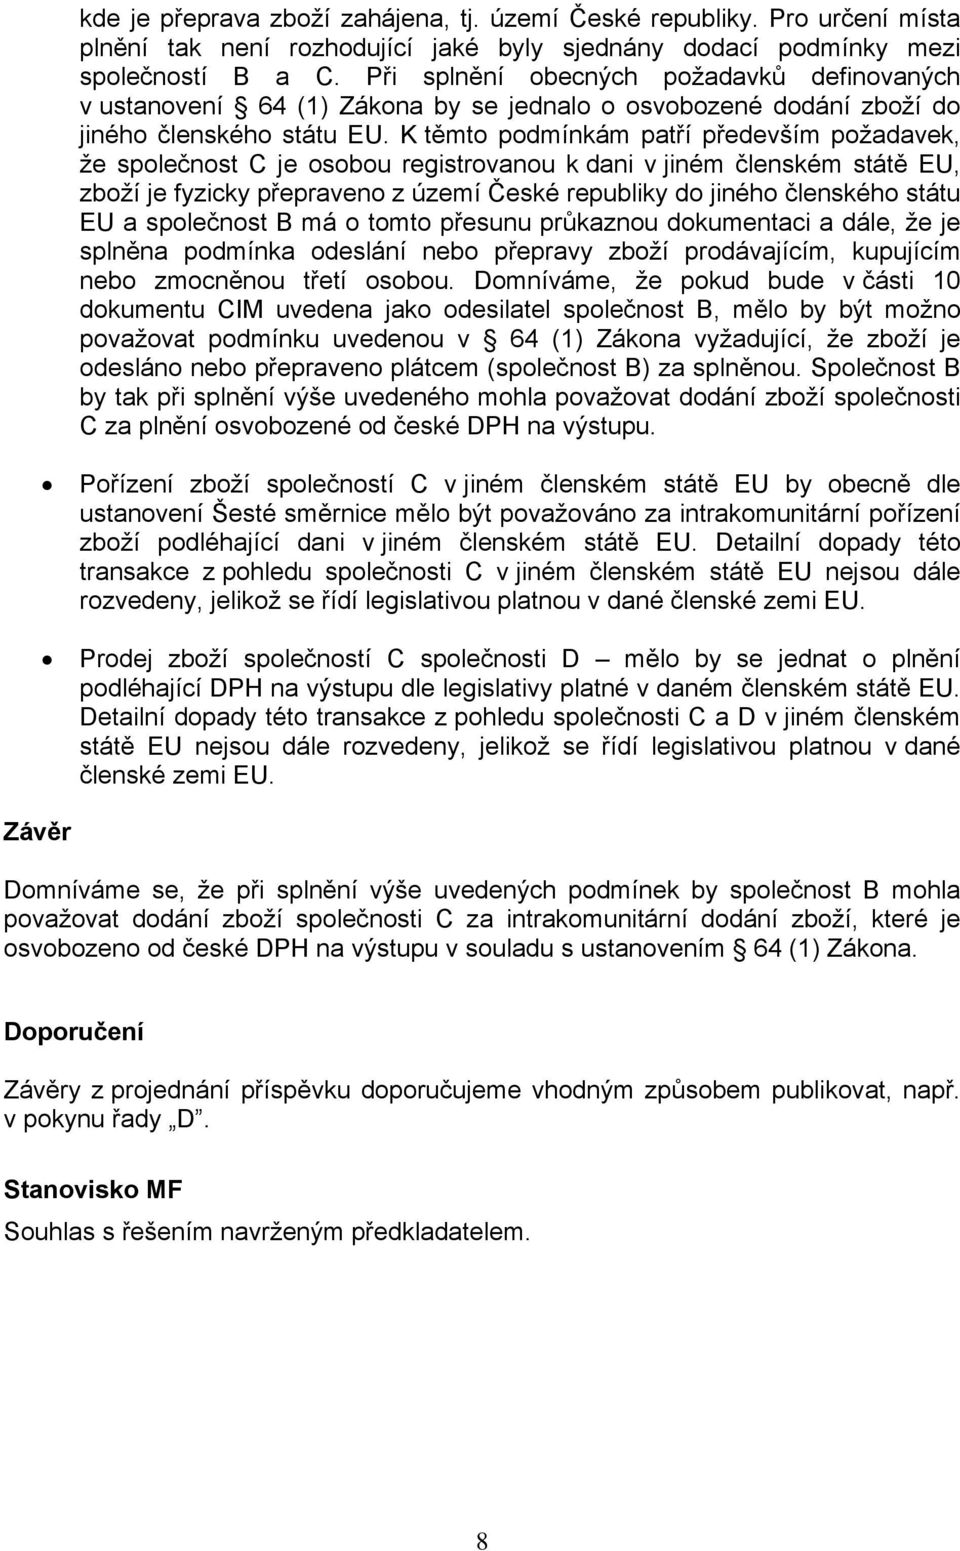 K těmto podmínkám patří především požadavek, že společnost C je osobou registrovanou k dani v jiném členském státě EU, zboží je fyzicky přepraveno z území České republiky do jiného členského státu EU